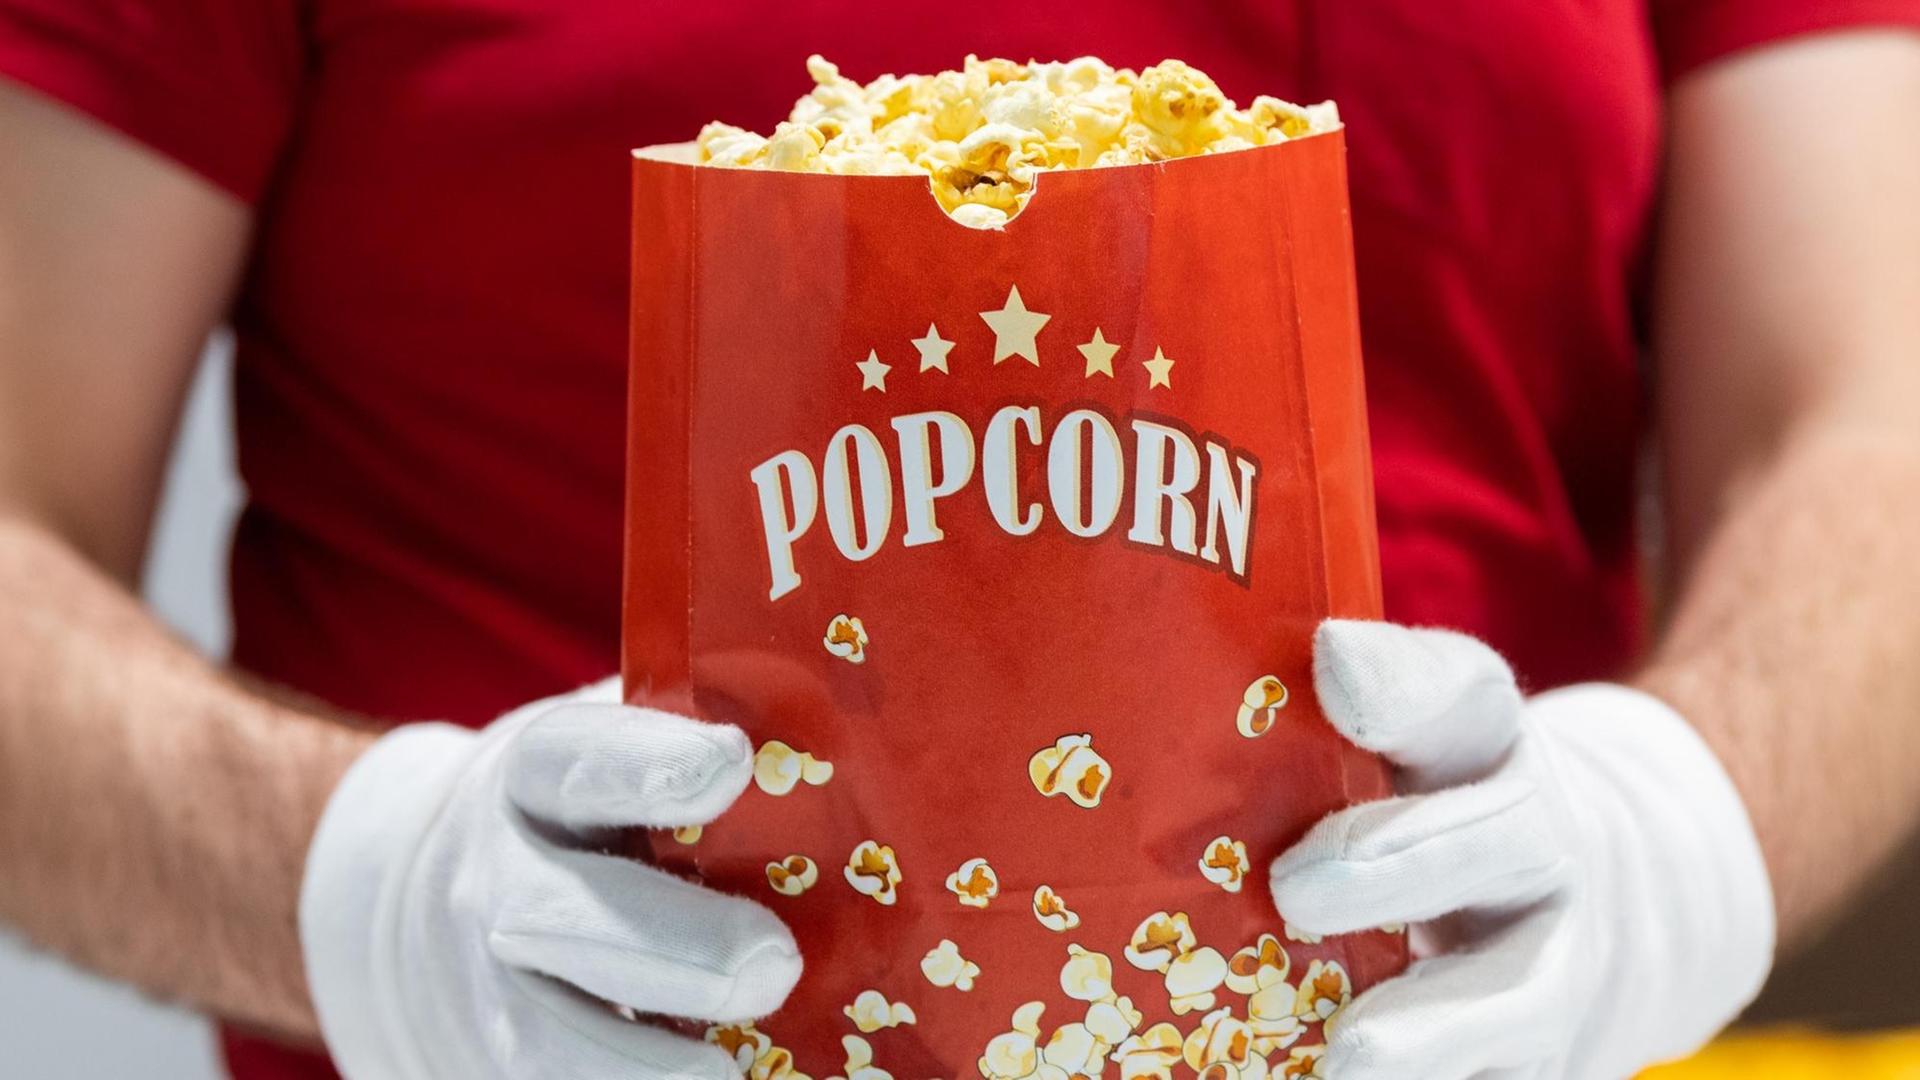 Ein Mitarbeiter des Kinos hält eine Tüte Popcorn in den Händen und trägt dabei Schutzhandschuhe.